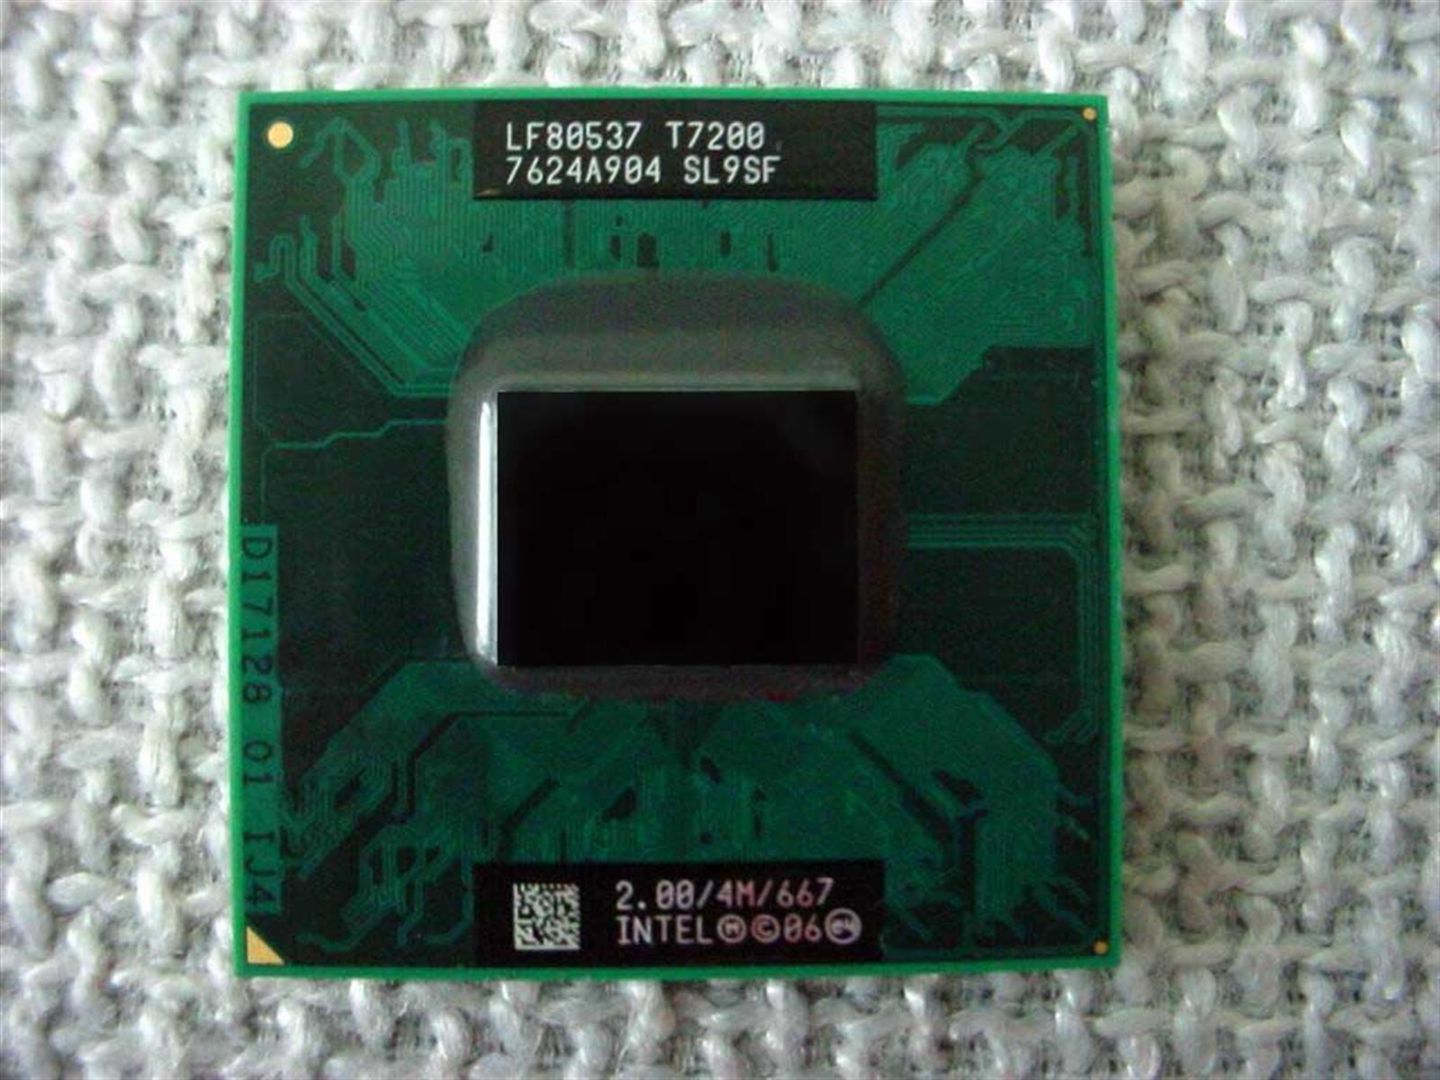 Intel Core2 DUO T7200 SL9SF Mobile CPU